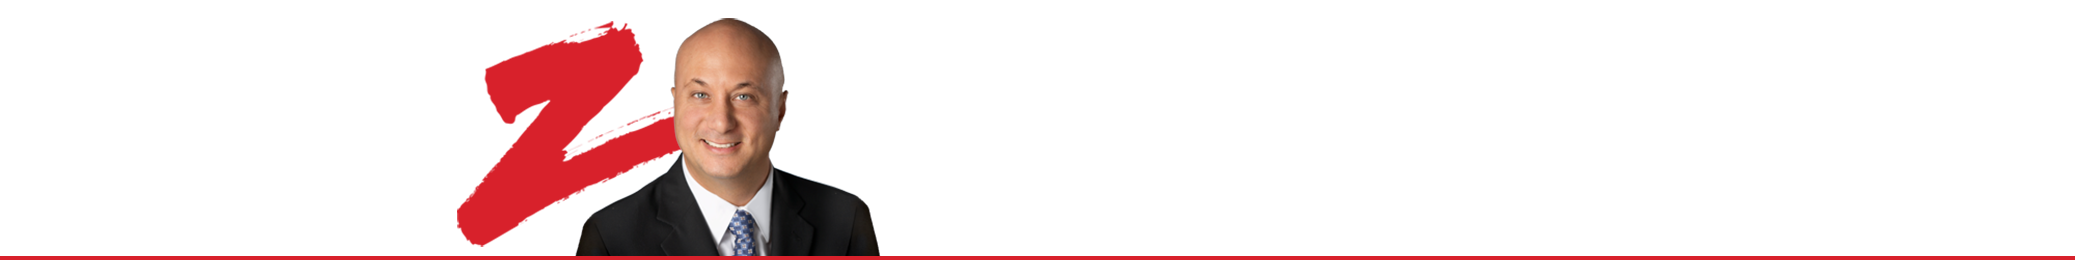 PAUL ZAMMIT REAL ESTATE LTD., BROKERAGE